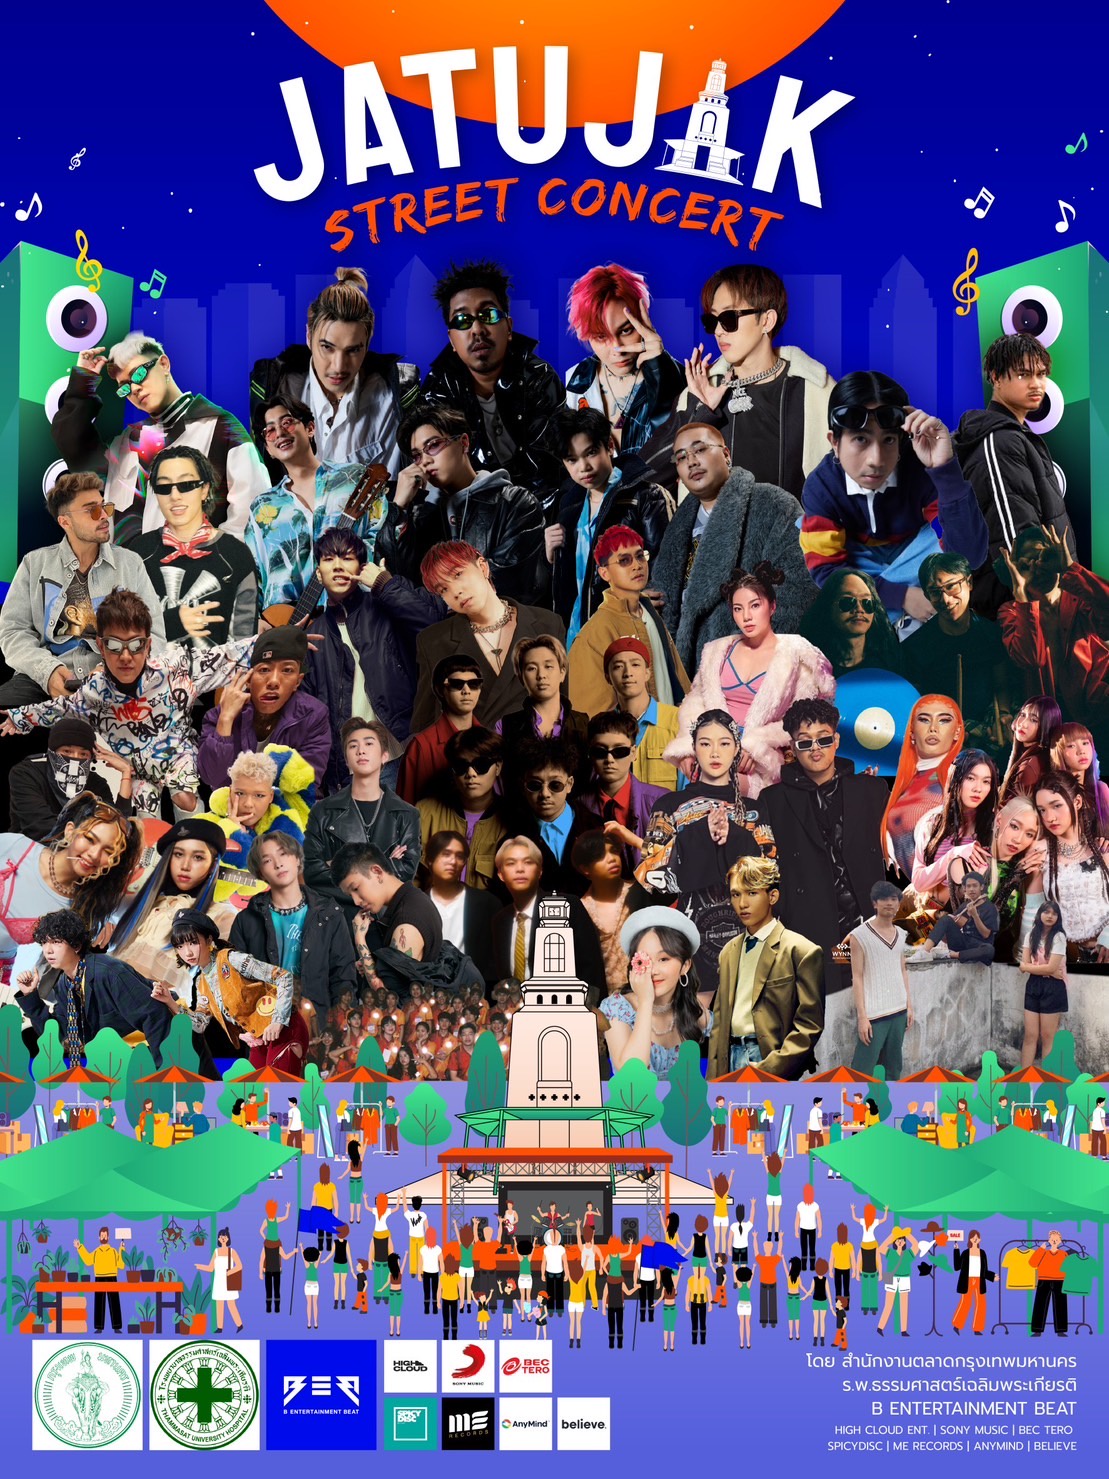 B Entertainment BEAT นำทีมศิลปินหลากค่ายกว่า 20 ชีวิต!! สร้างสีสันความสนุกกับกิจกรรม JATUJAK STREET CONCERT